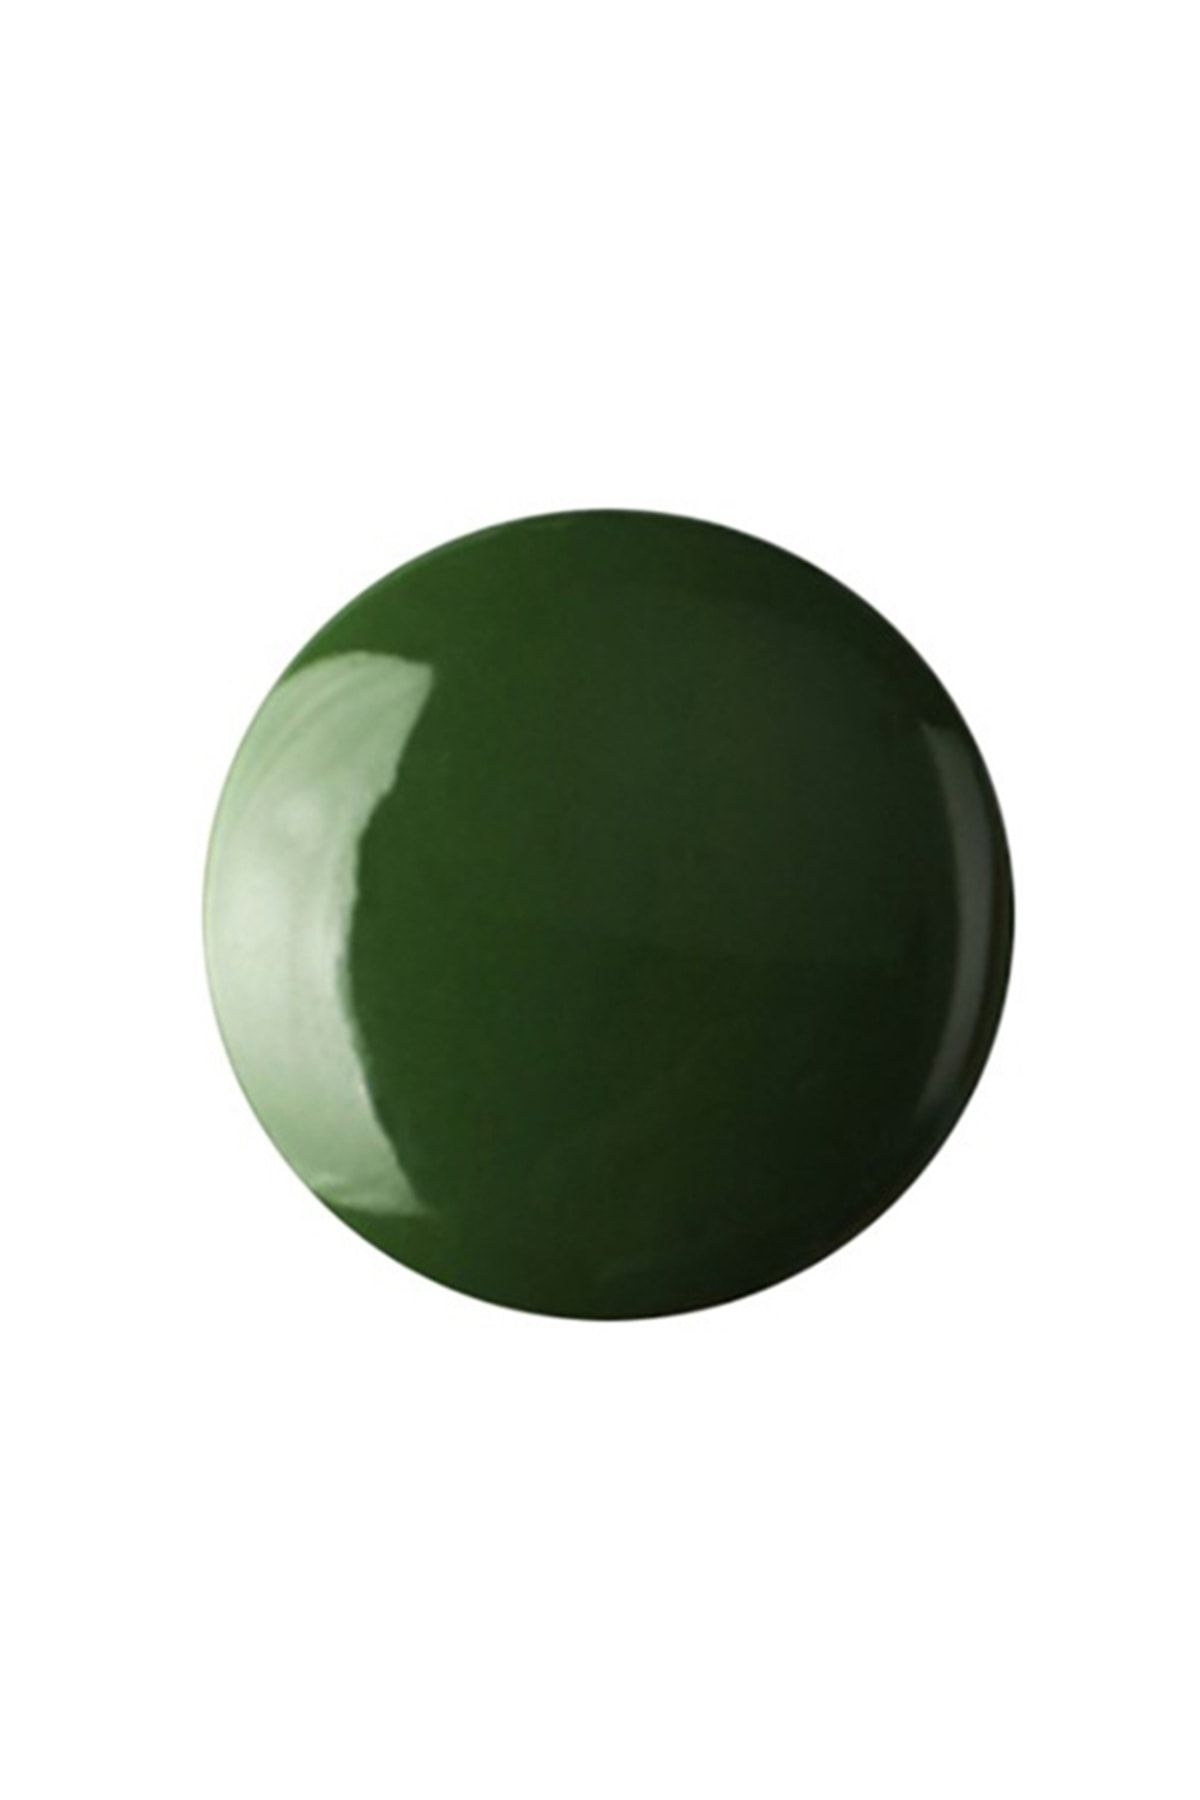 Refsan Renkli Hazır Seramik Sır 6601-5 Yaprak Yeşili (1050 °C) - 250 ml